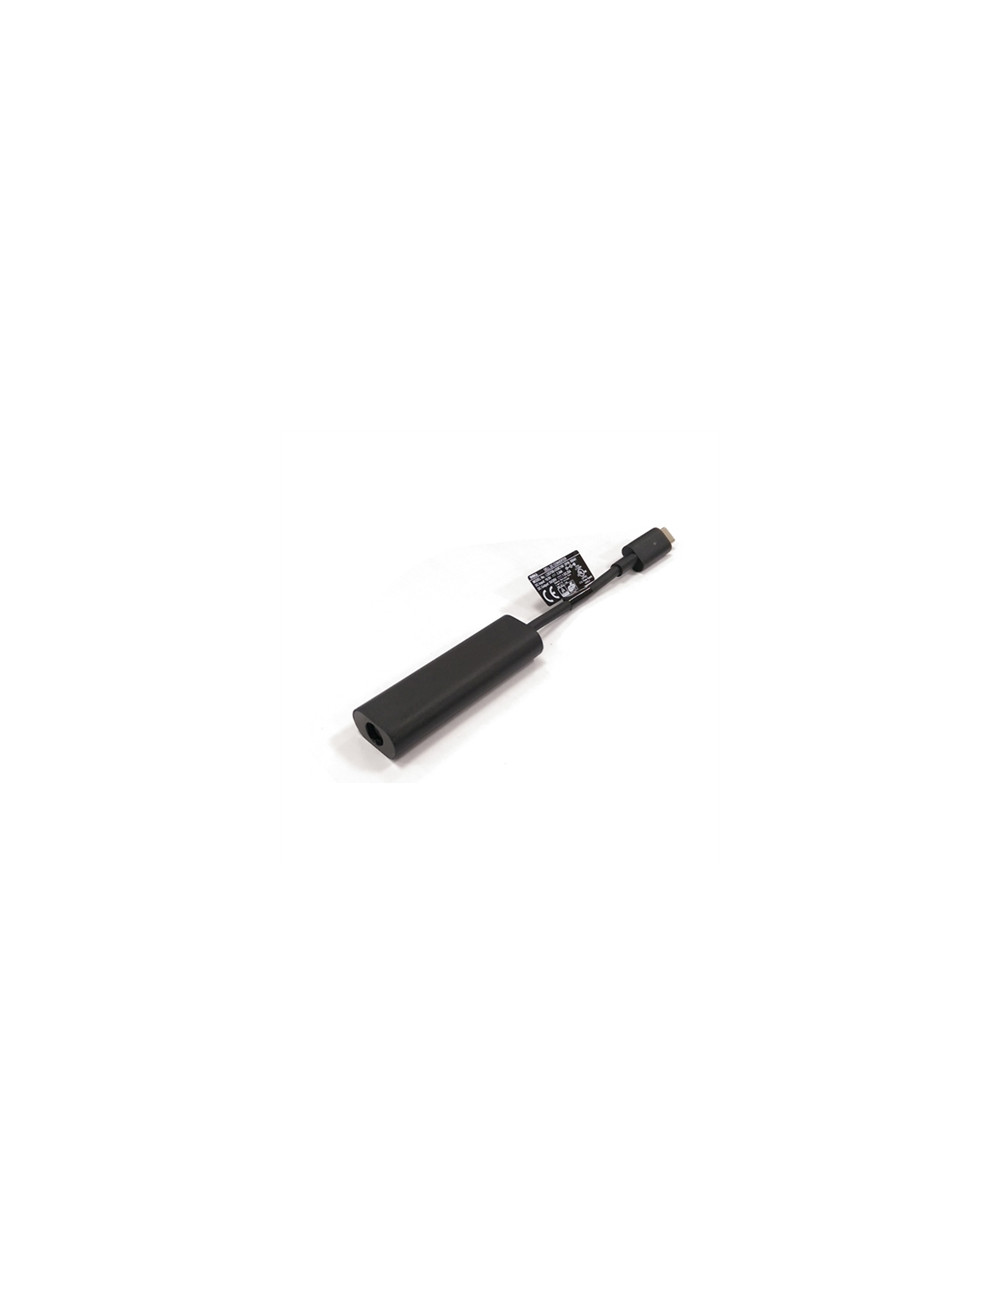 Dell Adapter 7.4mm Barrel to USB-C 7.4mm Barrel USB-C